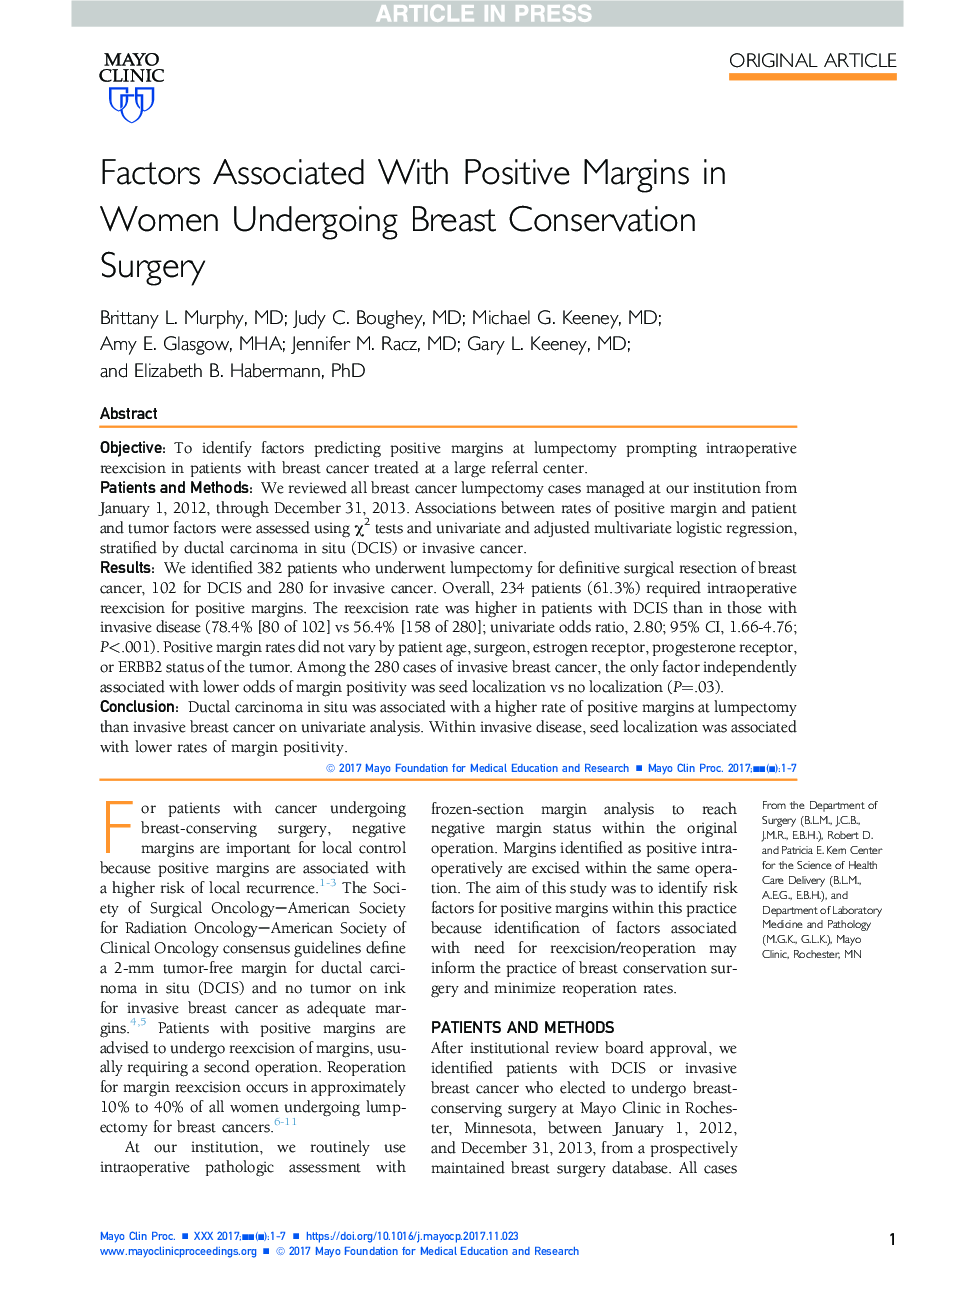 عوامل مرتبط با حاشیه های مثبت در زنان جراحی حفاظت از پستان 